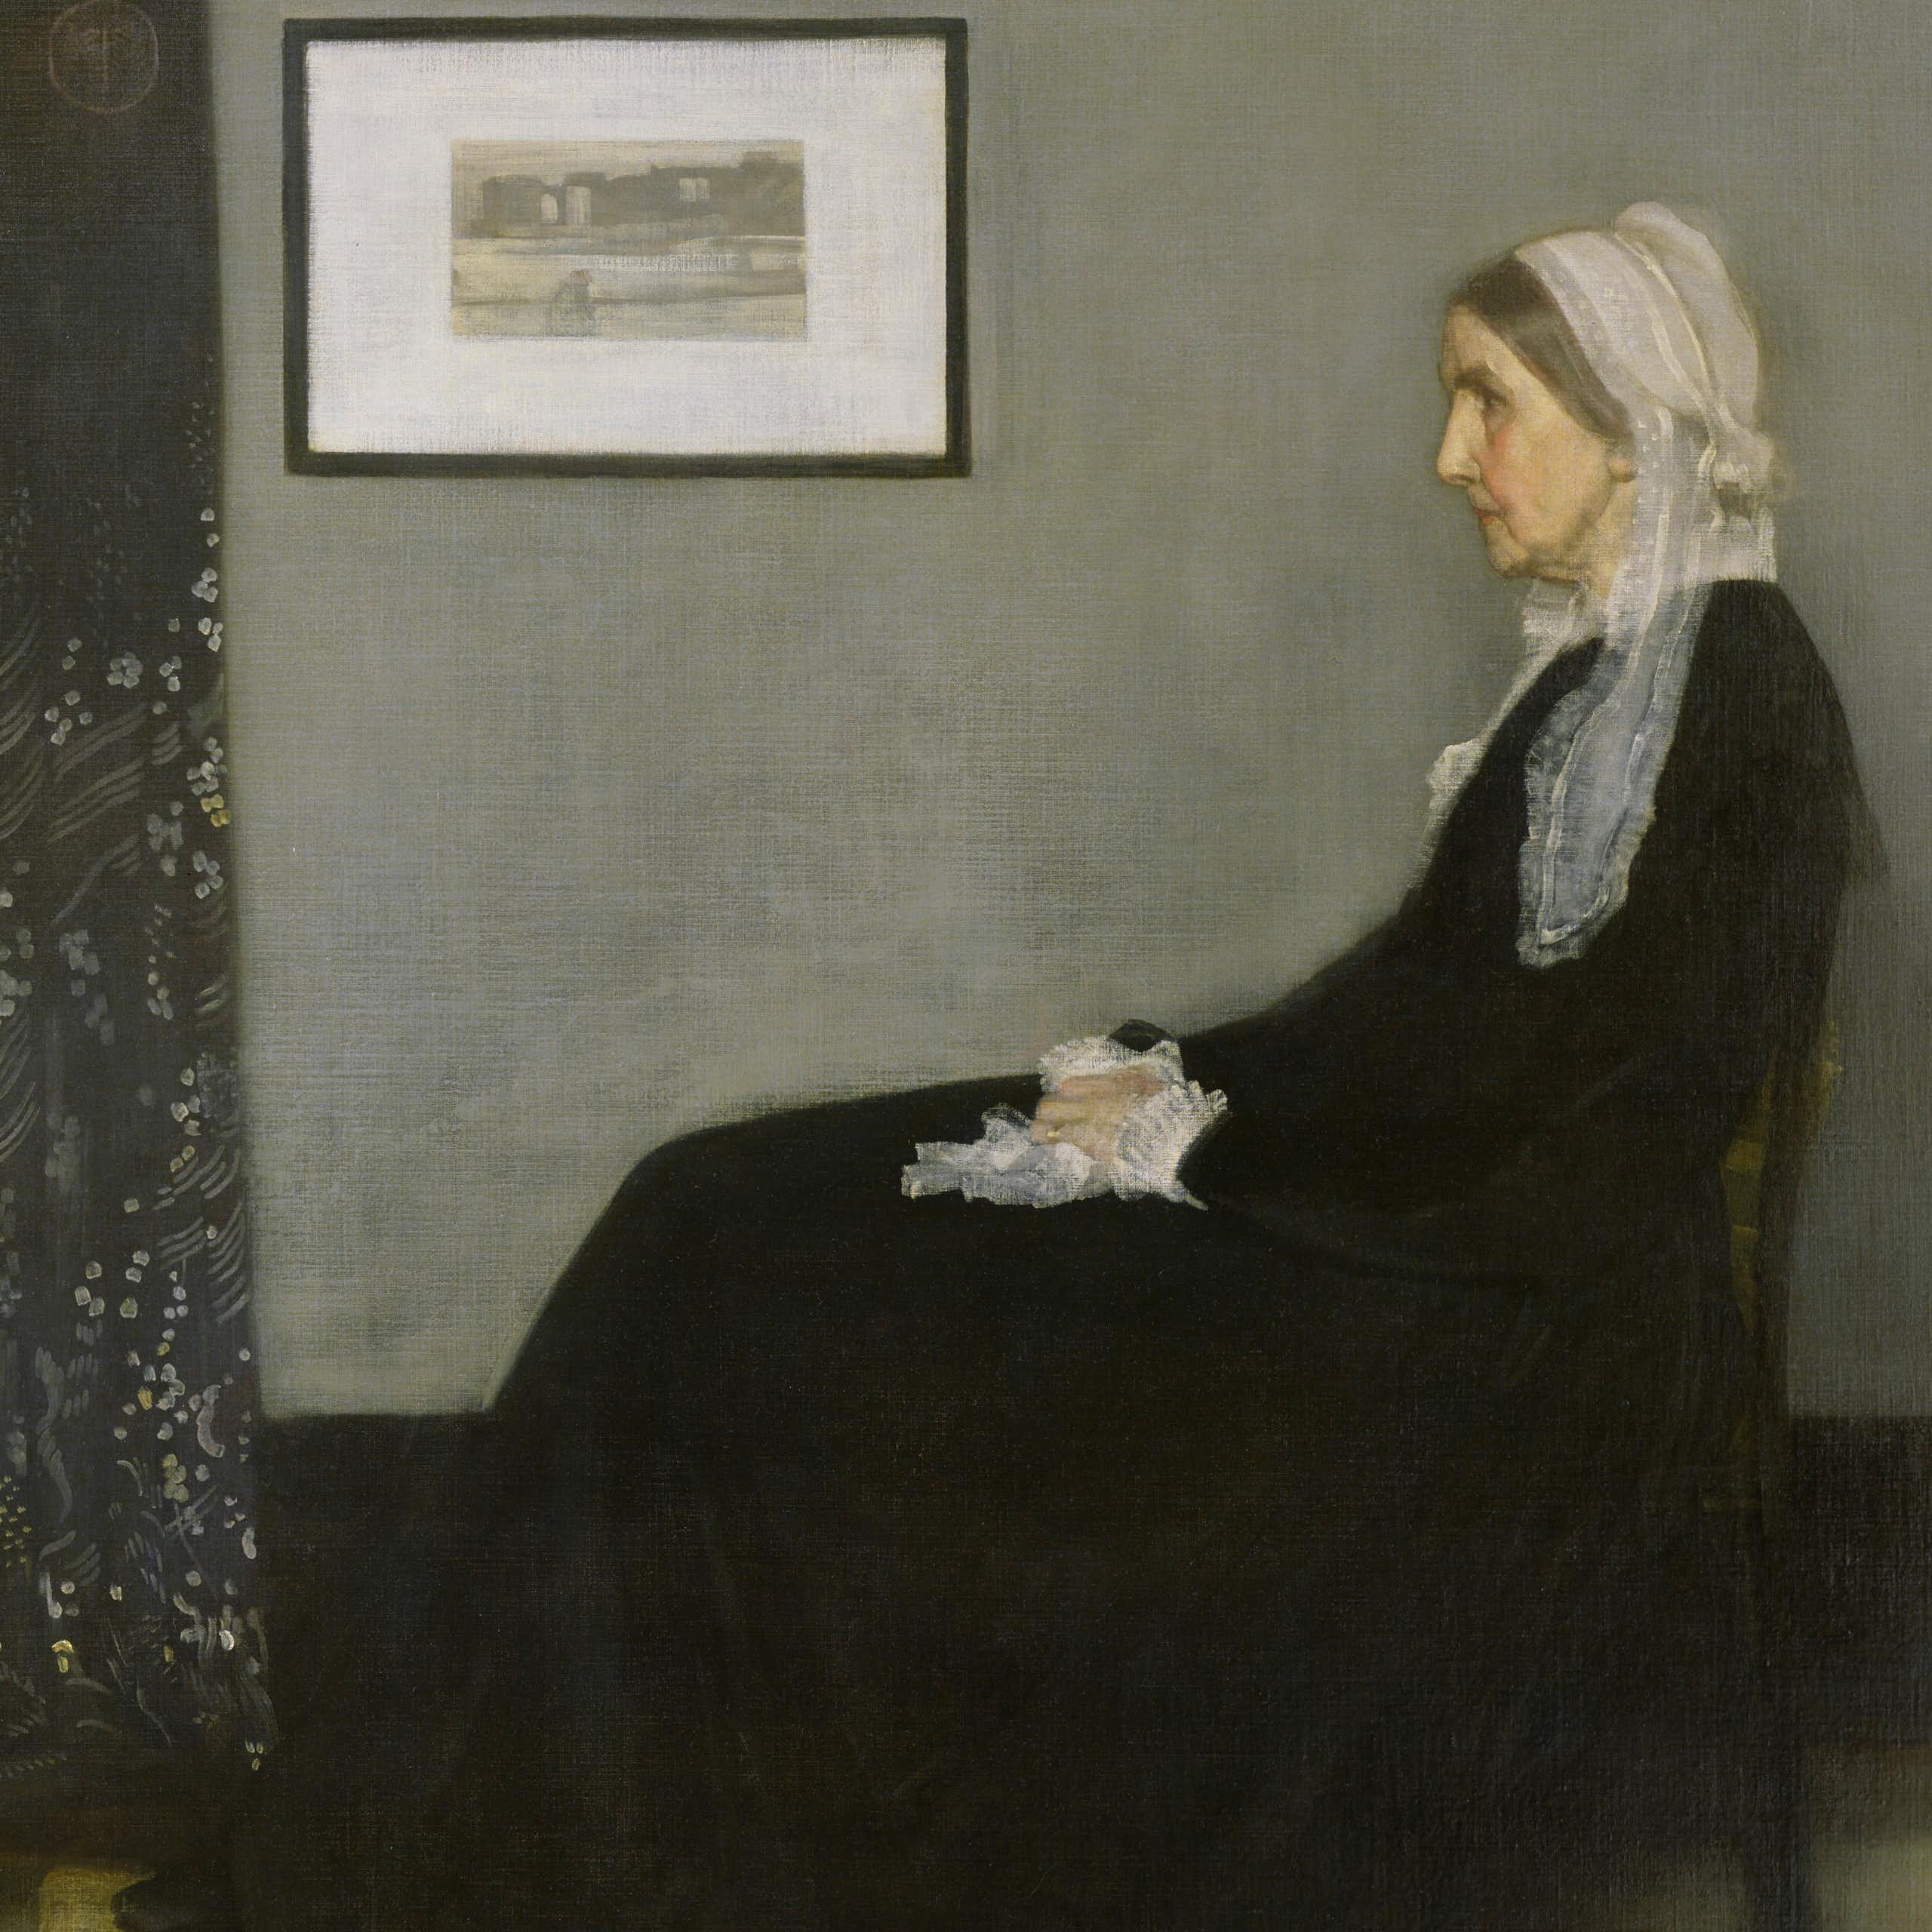 Comment Whistler a influencé la peinture de son temps